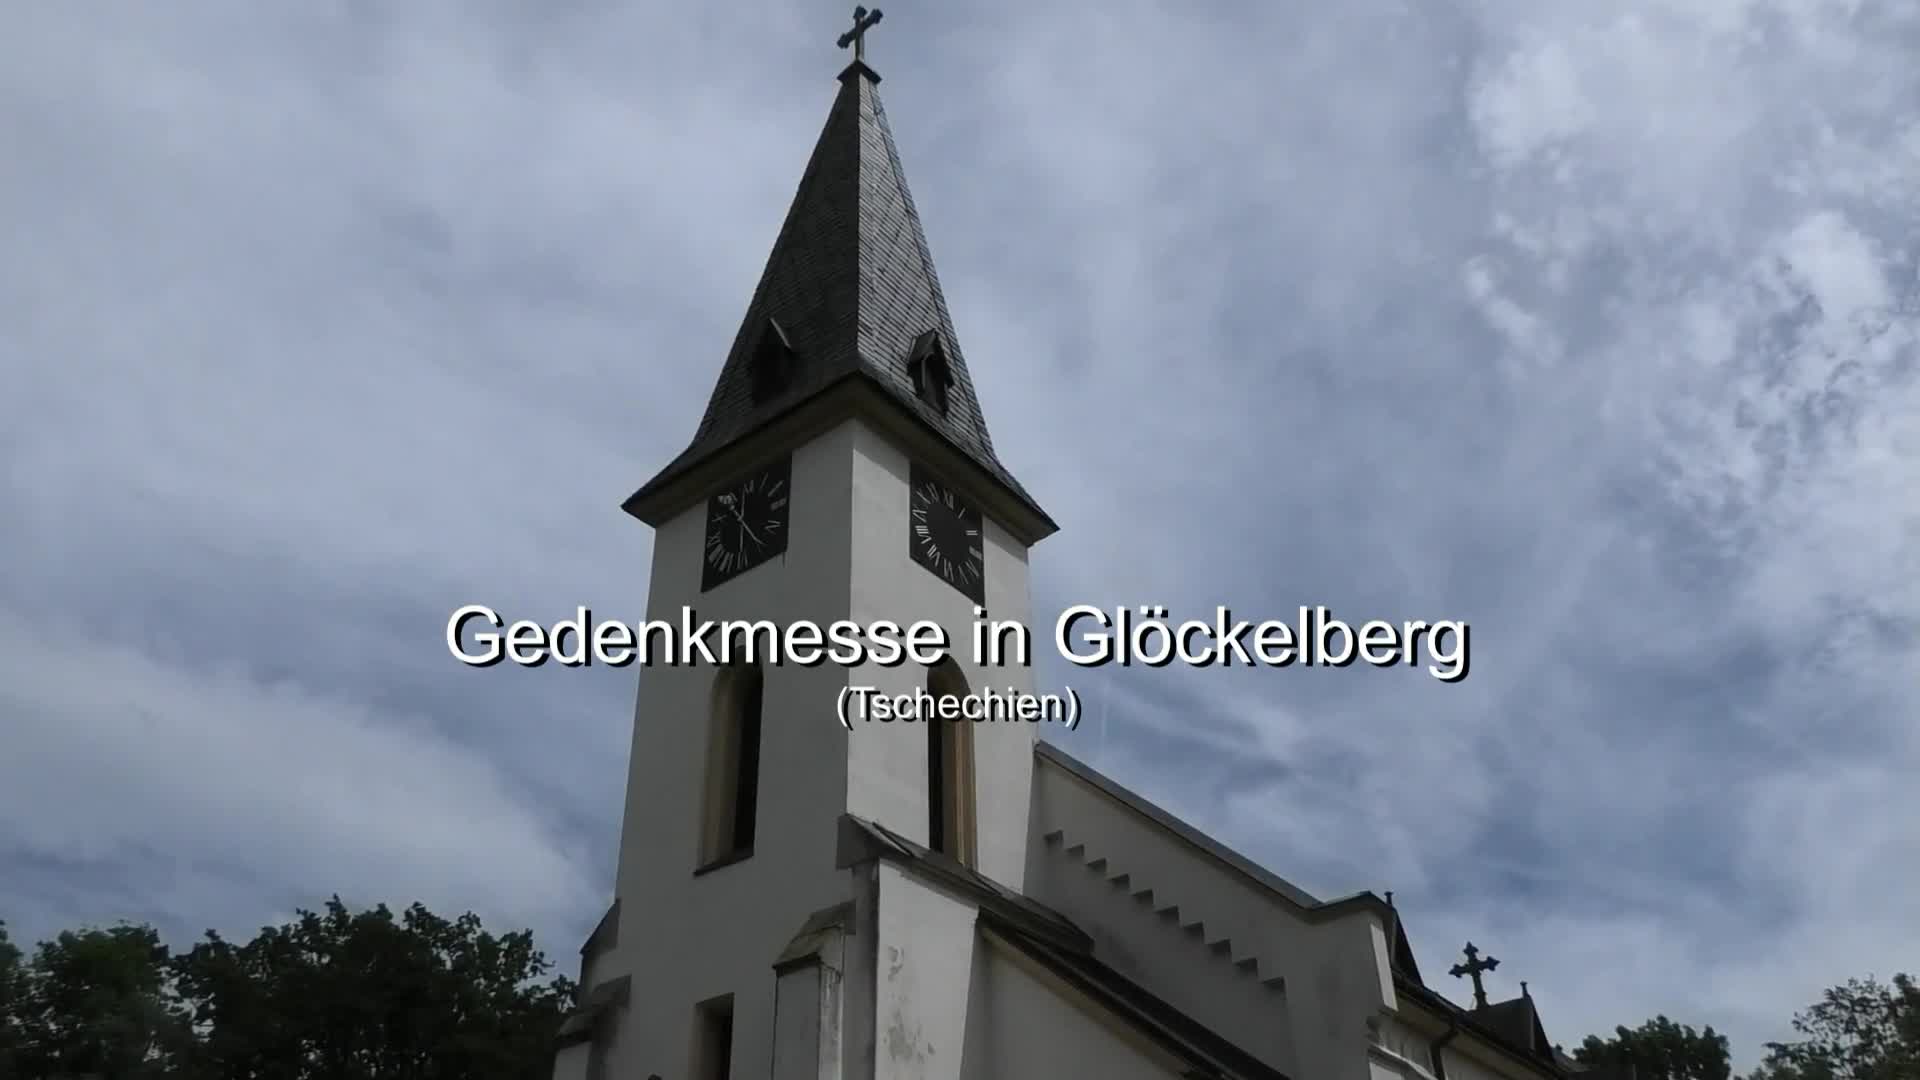 Gedenkmesse in Glöckelberg